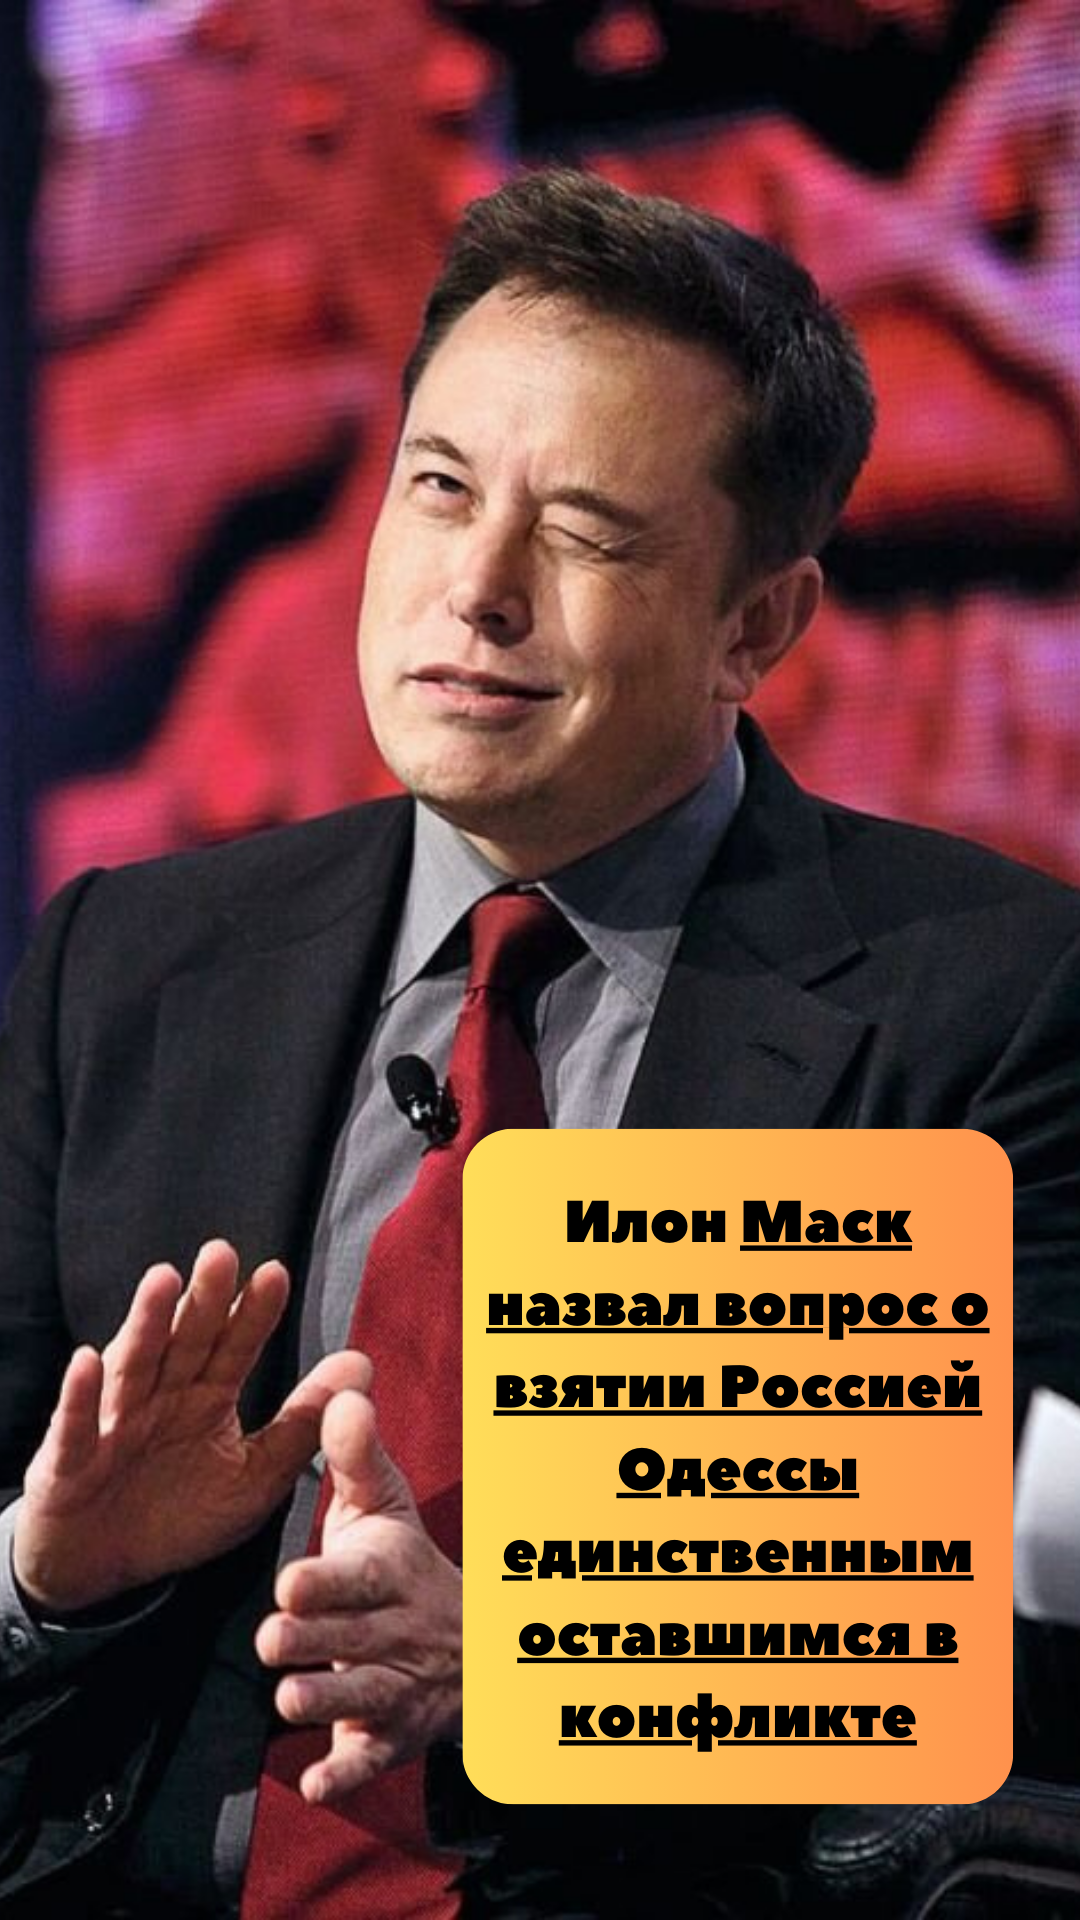 Маск назвал вопрос о взятии Россией Одессы единственным оставшимся в конфликте